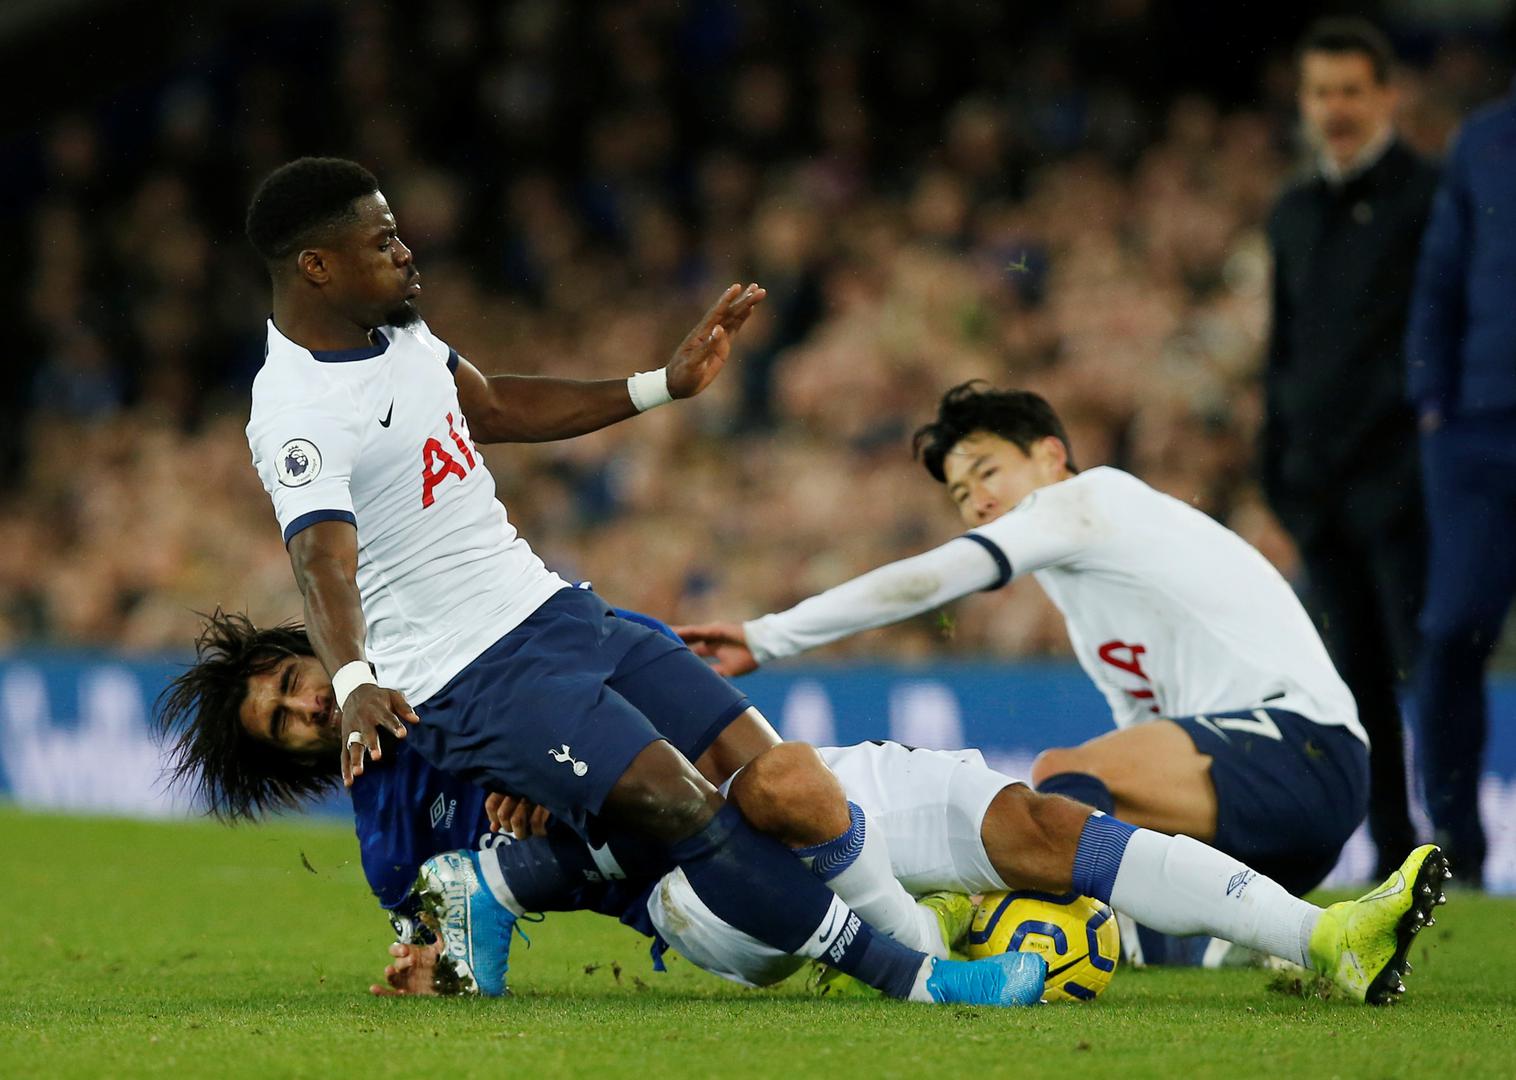 Tottenham je poveo u 63. minuti golom Dele Alija nakon velike pogreške domaćeg veznjaka Alexa Iwobija koji je 'poklonio' gostima loptu.